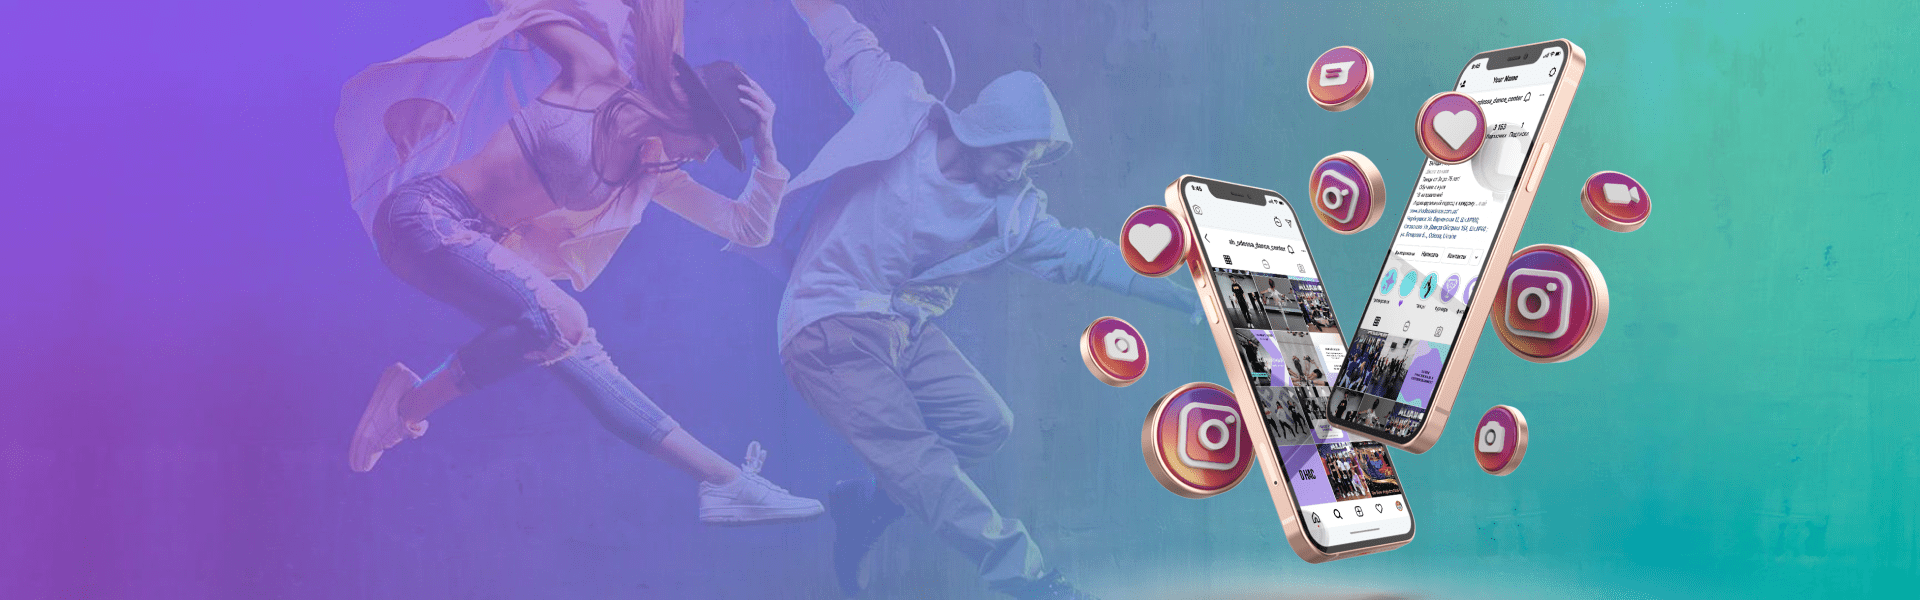 Ведение групп в социальных сетях для школы танцев “Ах, Одесса”